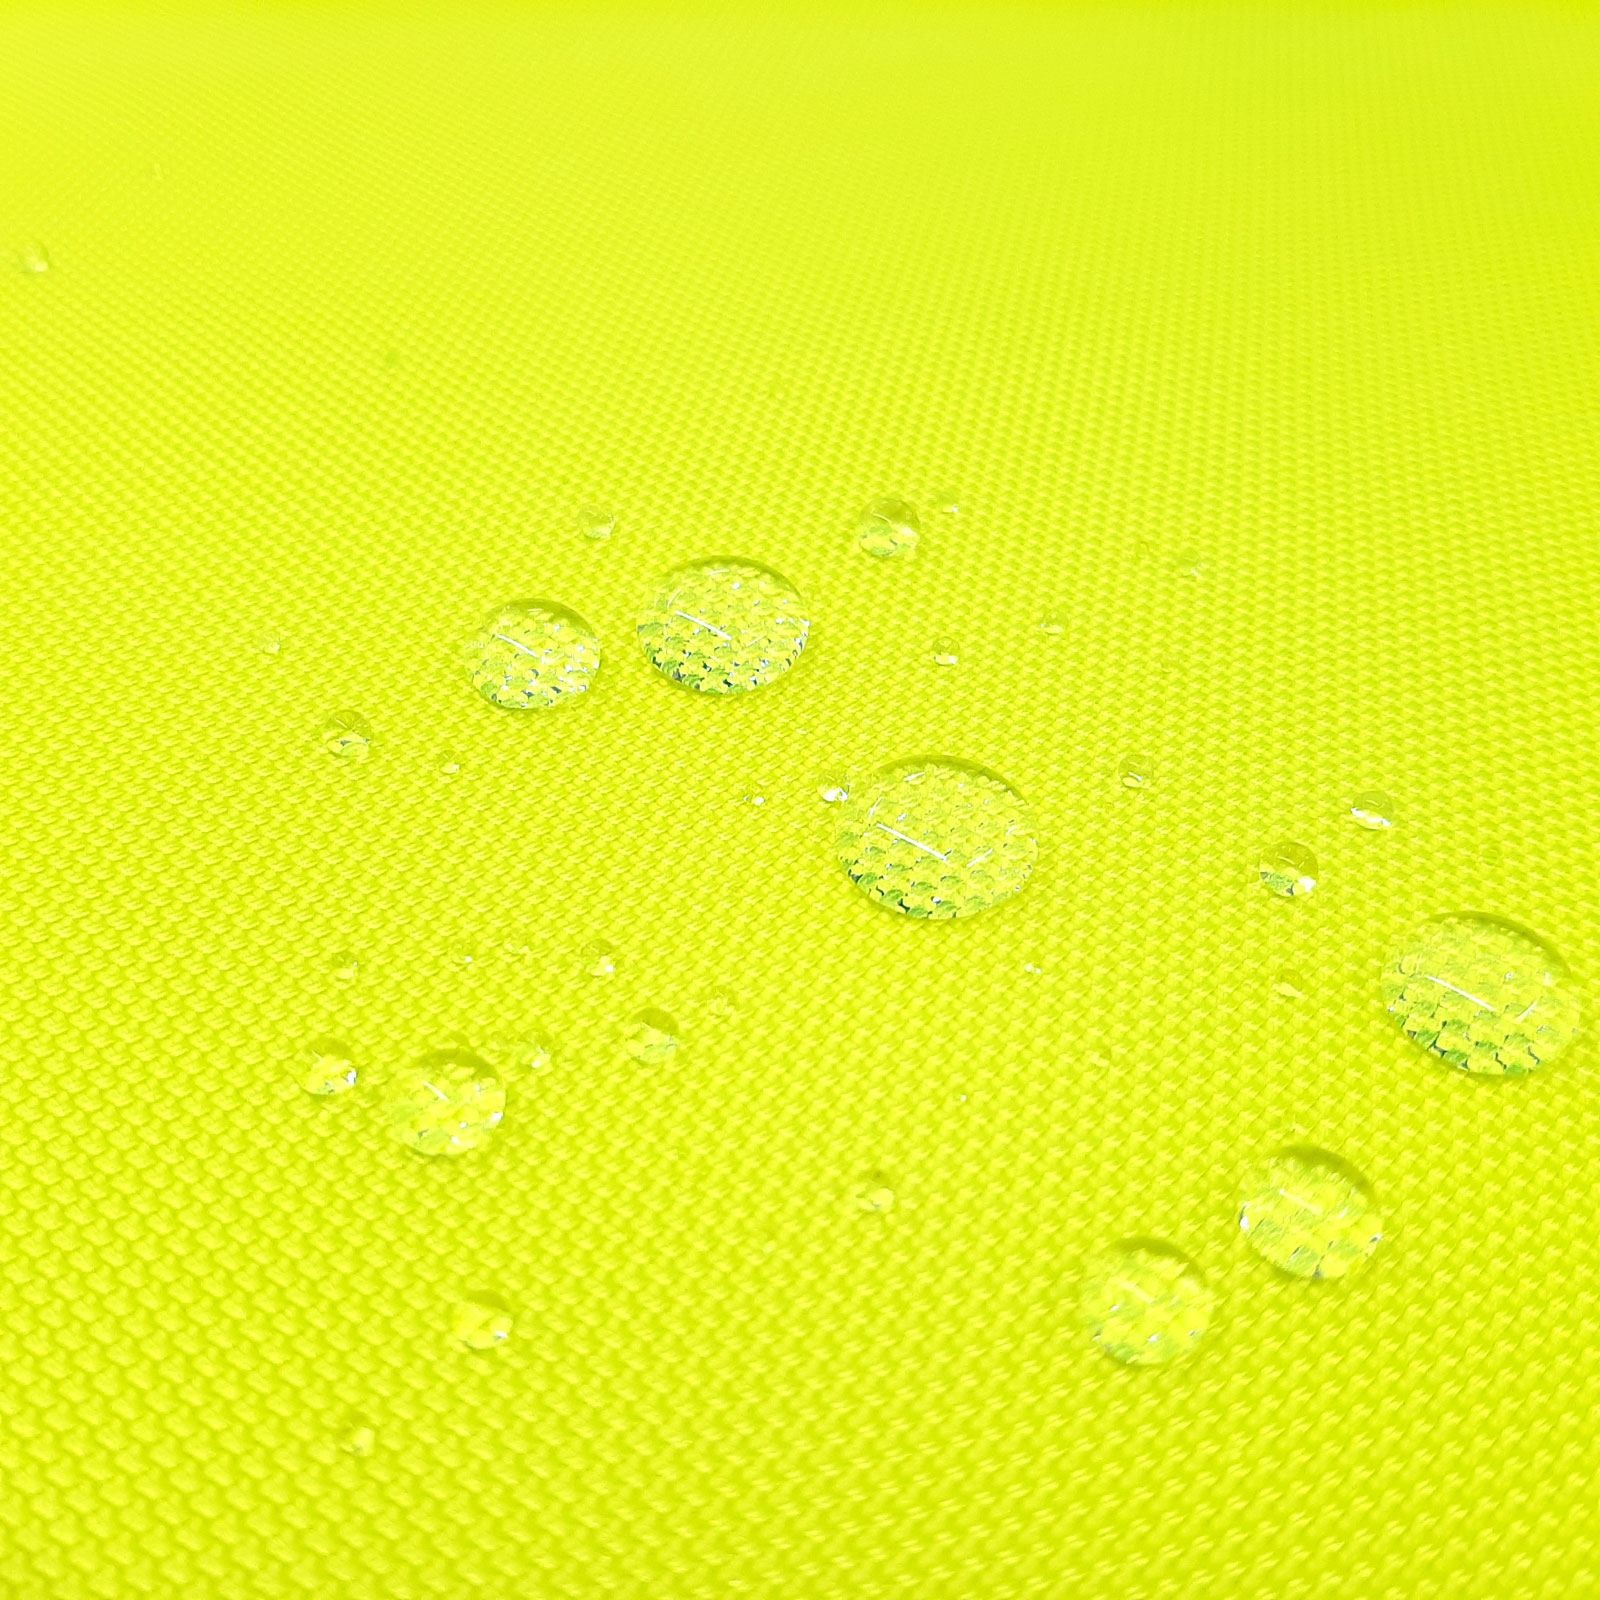 Lamia - Keprotec® laminado de 3 camadas - amarelo néon de acordo com a norma EN20471